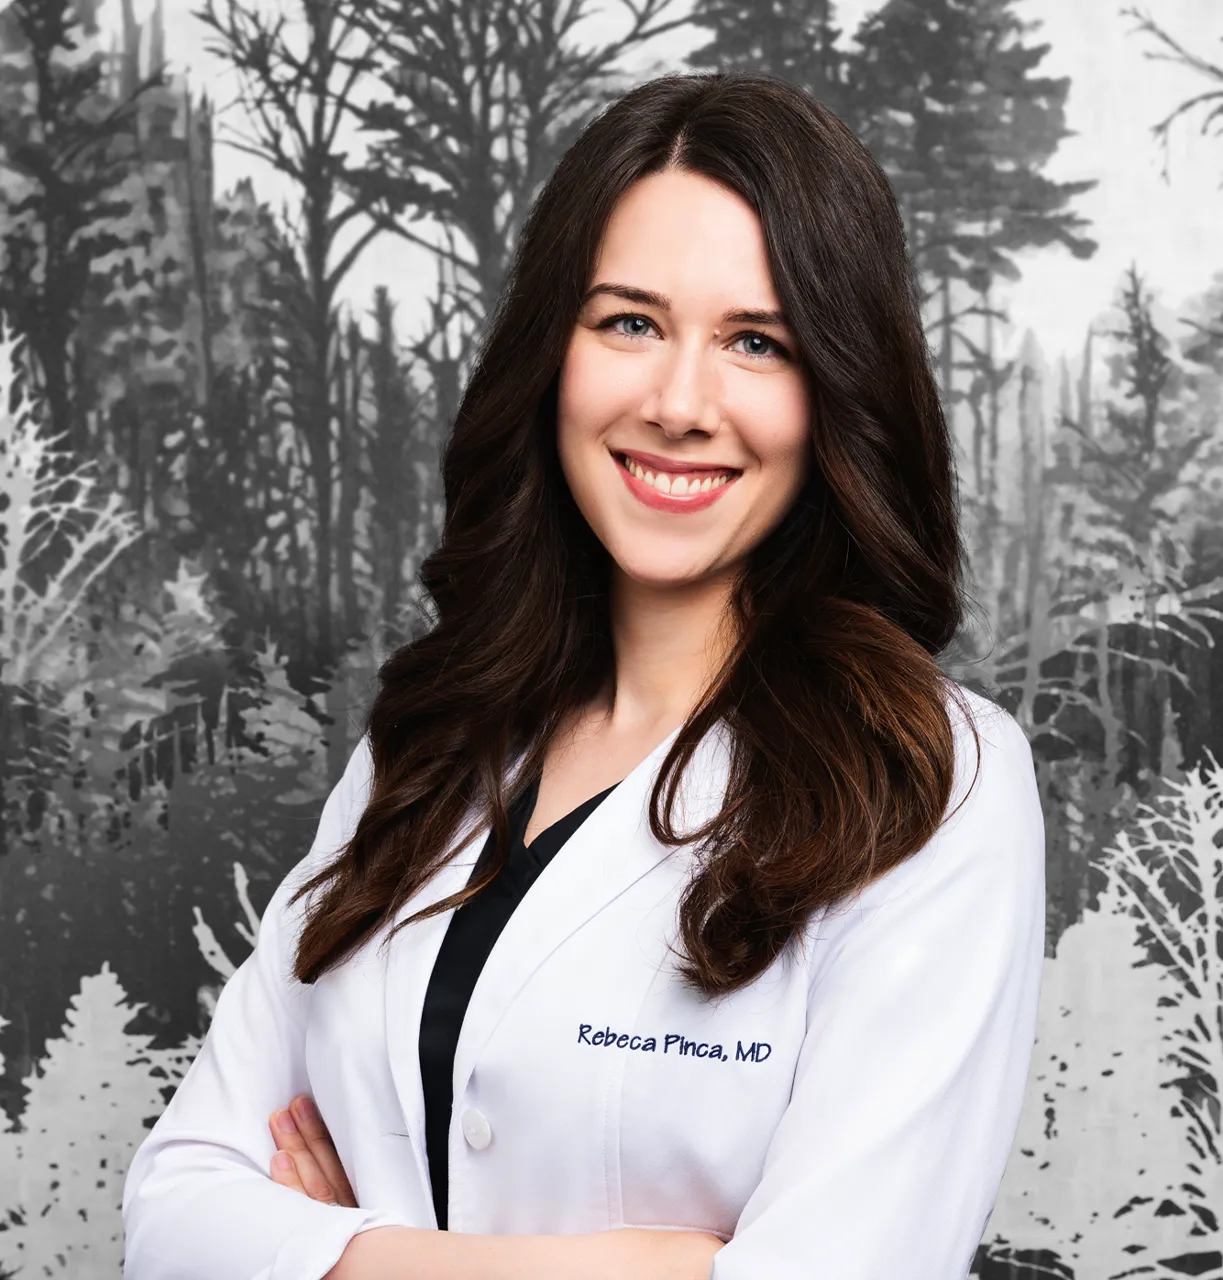 Dr. Rebecca Pinca